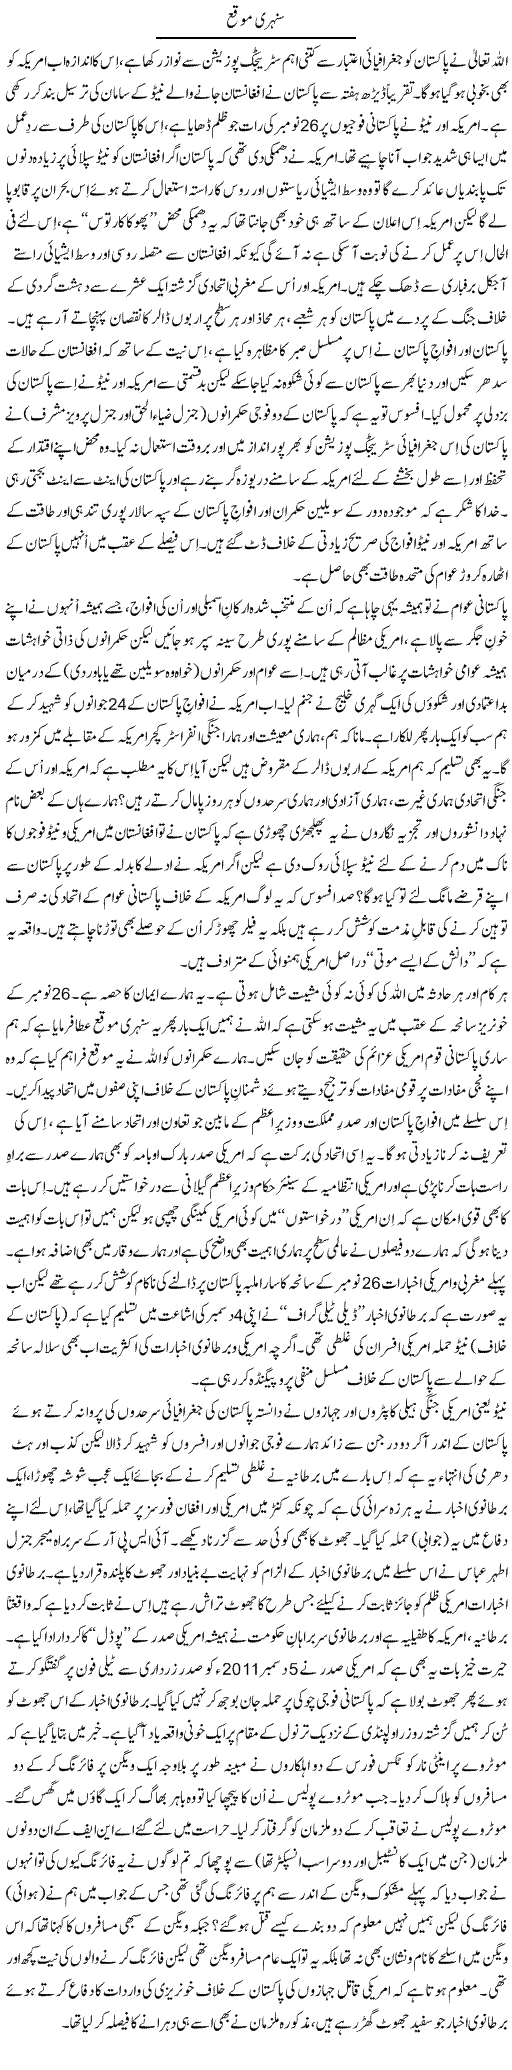 Golden Chance For Pakistan Express Column Tanvir Qasir 9 December 2011